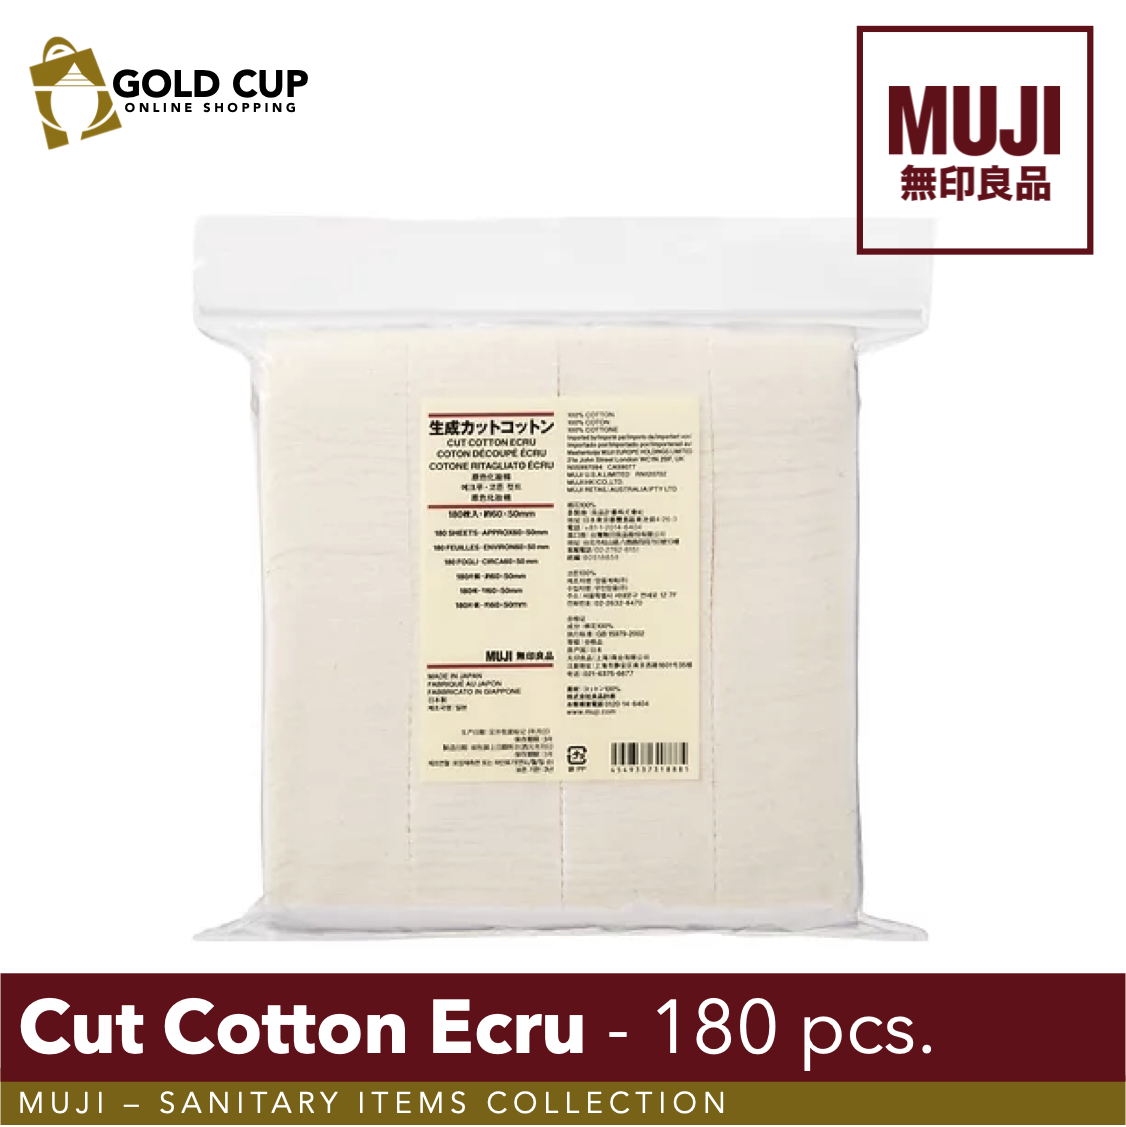 Cut Cotton Ecru